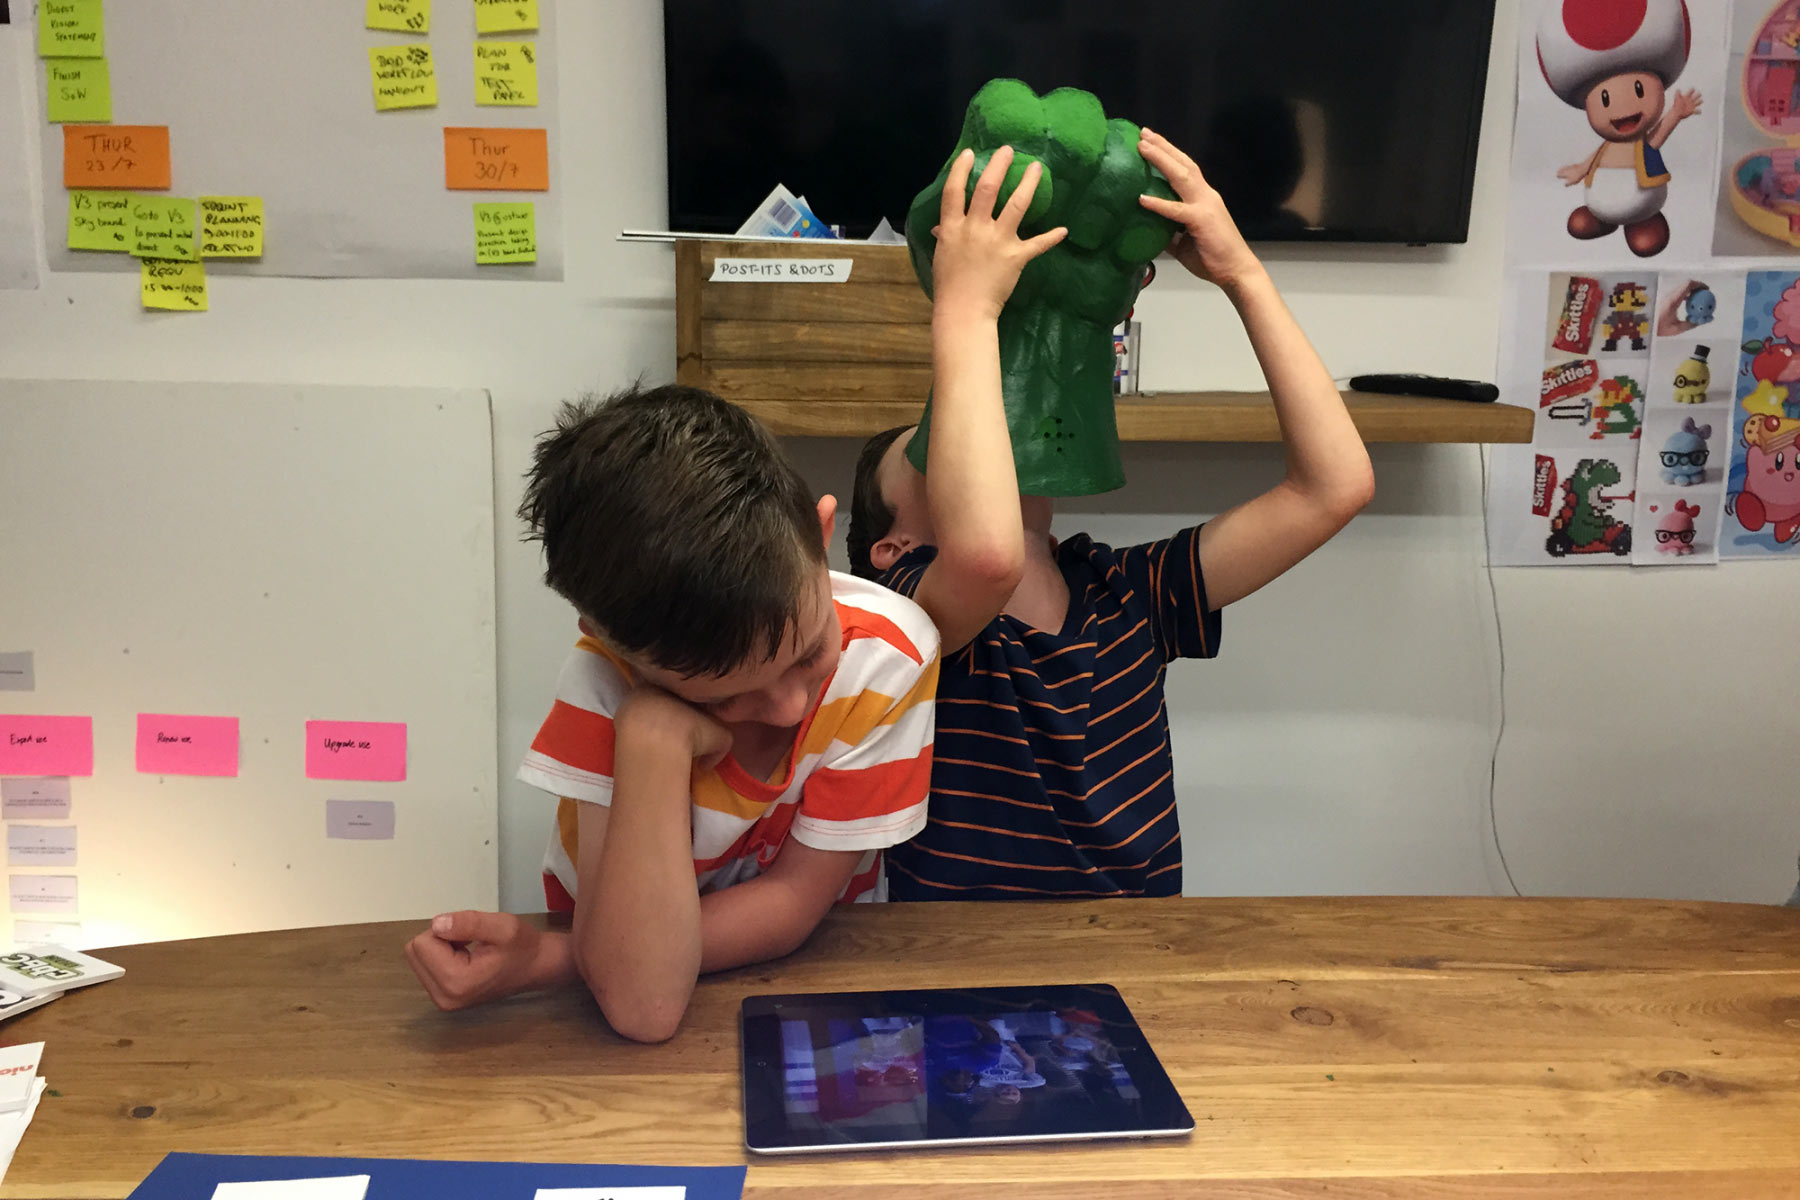 Children user-testing the Sky Kids app